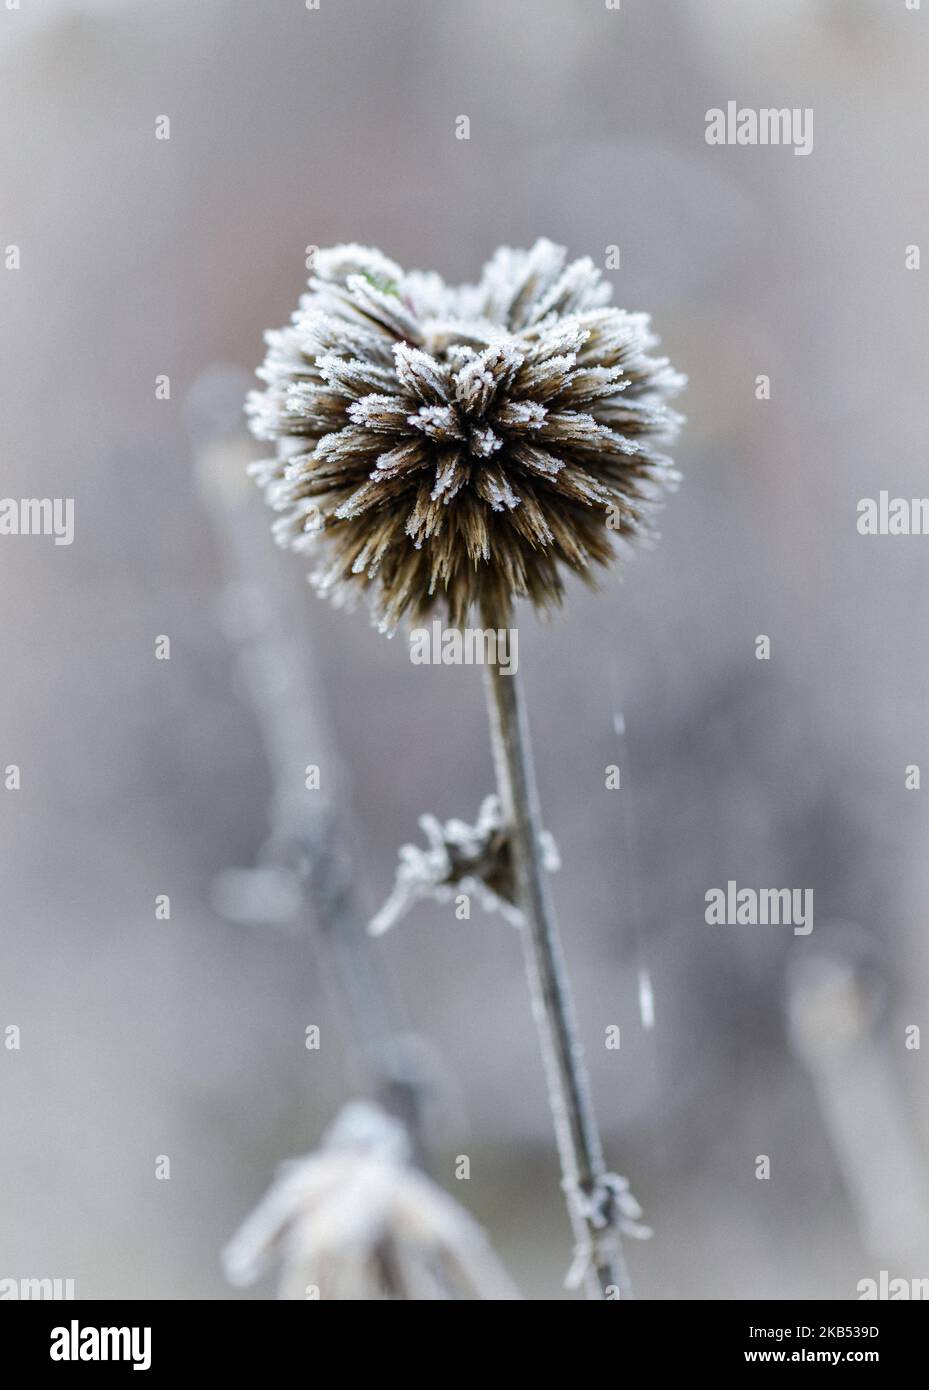 Frozen Burdock Seed Head showing Hoar Frost Stock Photo